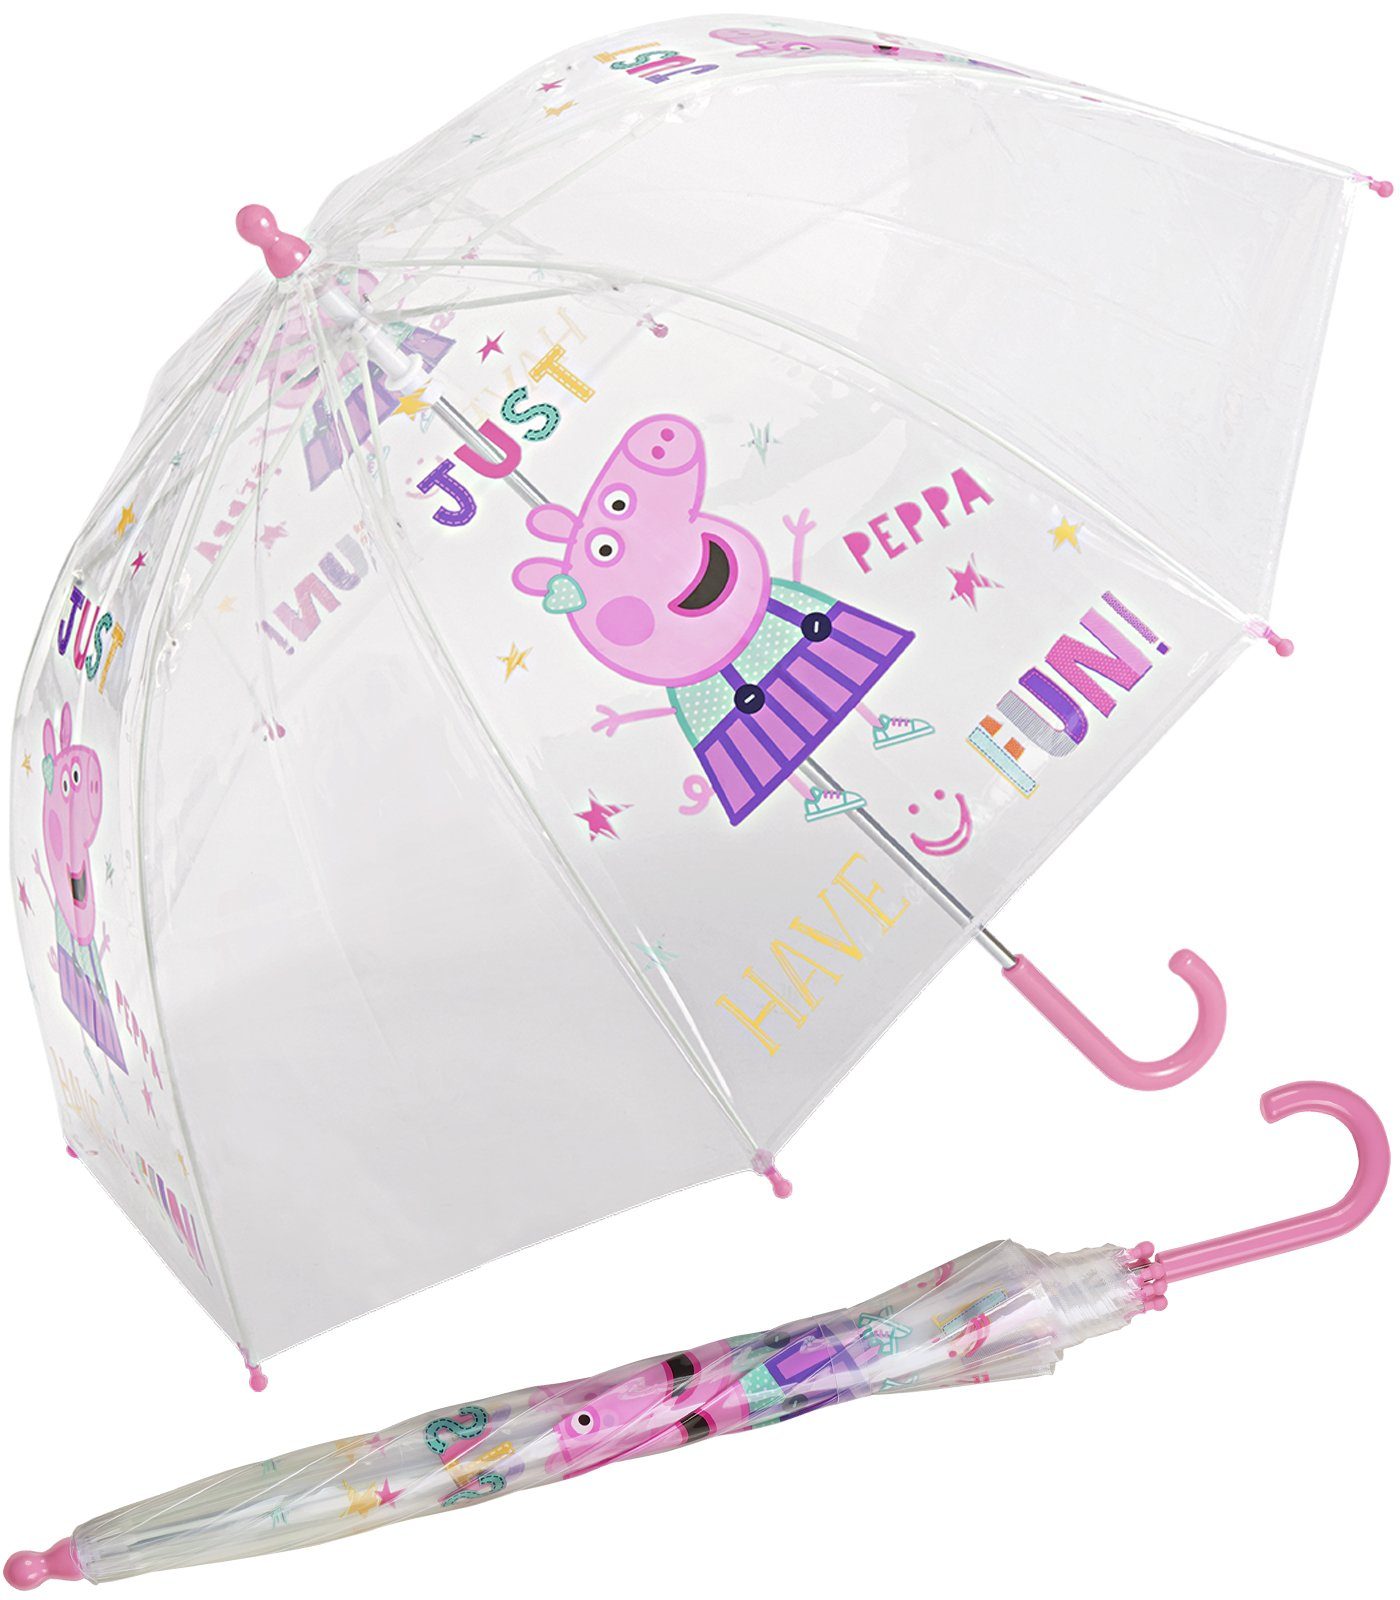 HAPPY RAIN Stockregenschirm Kinder-Stockschirm transparent durchsichtig, stabil, leicht, mit Peppa Pig Motiven Just Fun